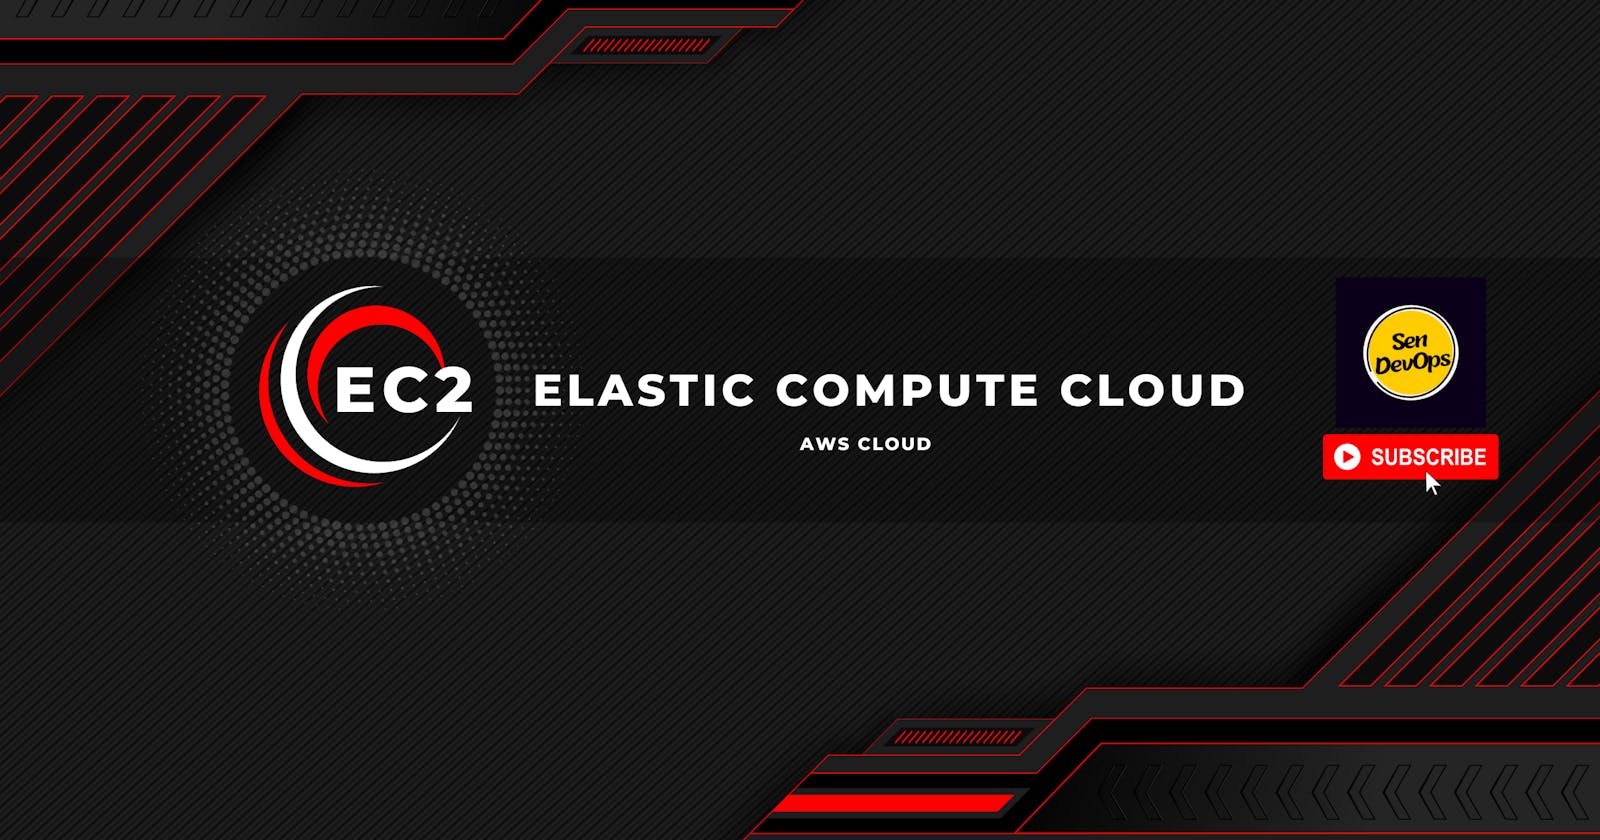 2. EC2 - Elastic Compute Cloud